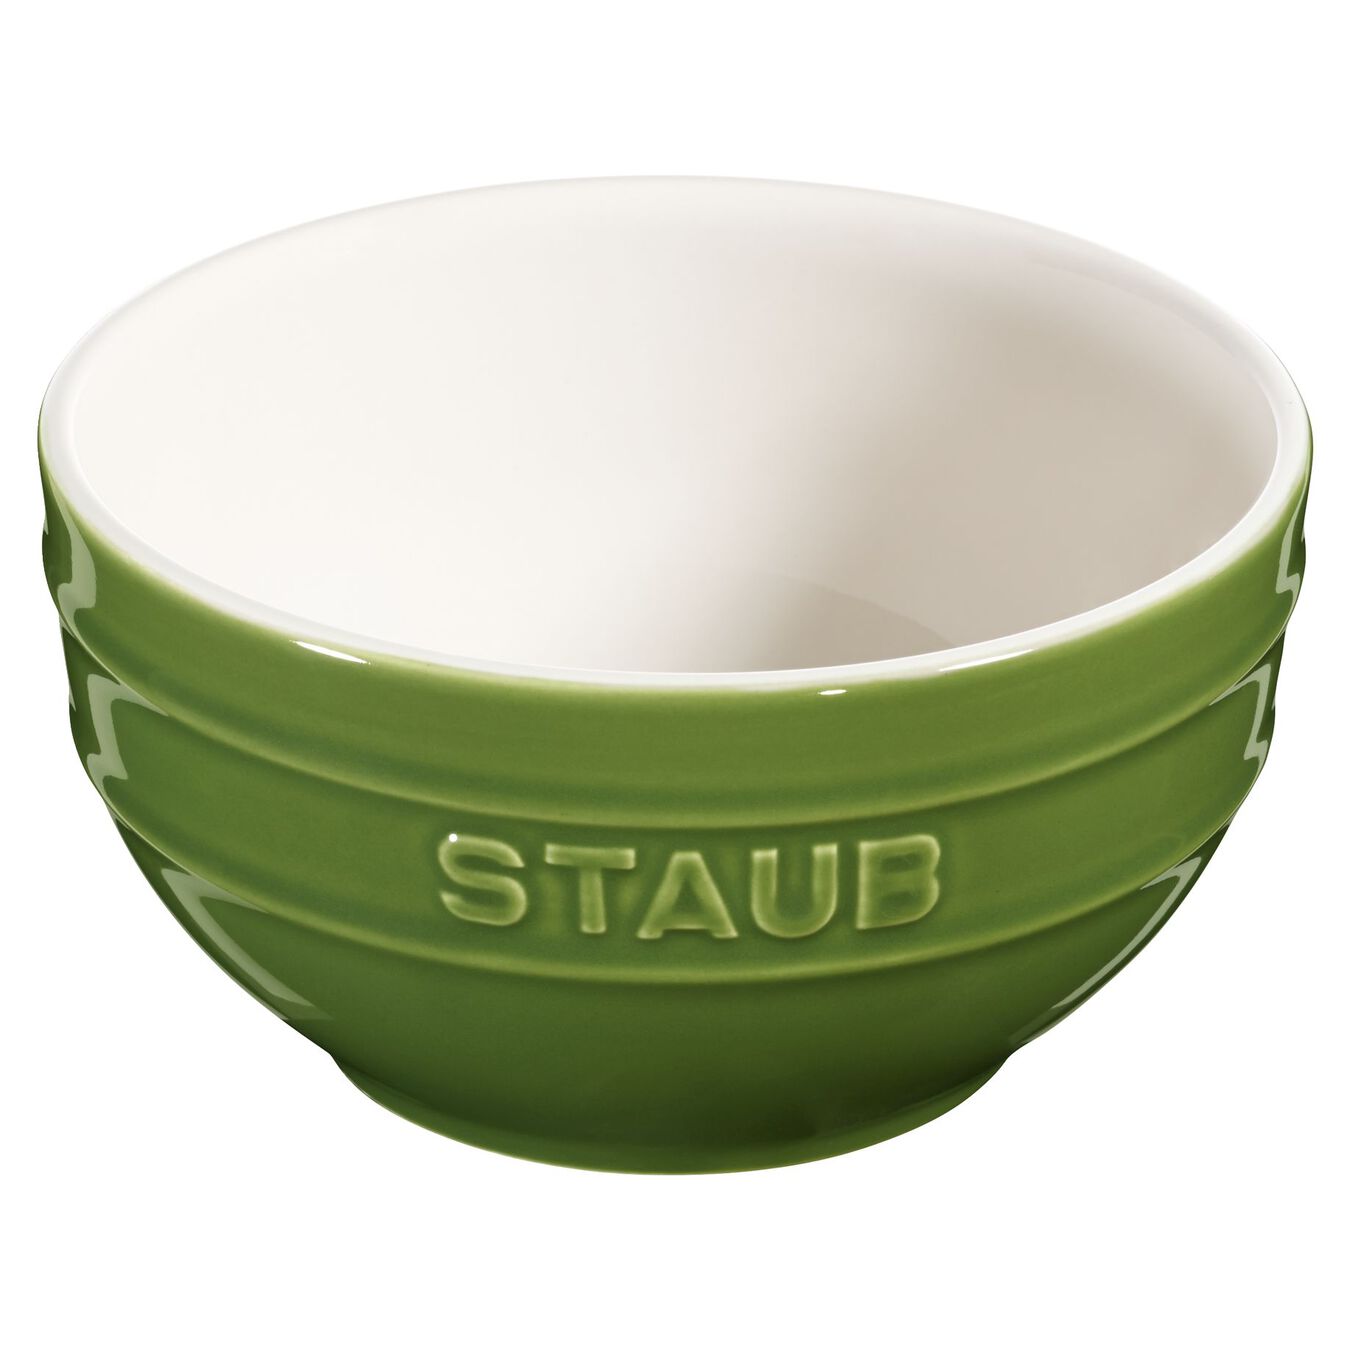 14 cm round Ceramic Bowl basil-green,,large 2